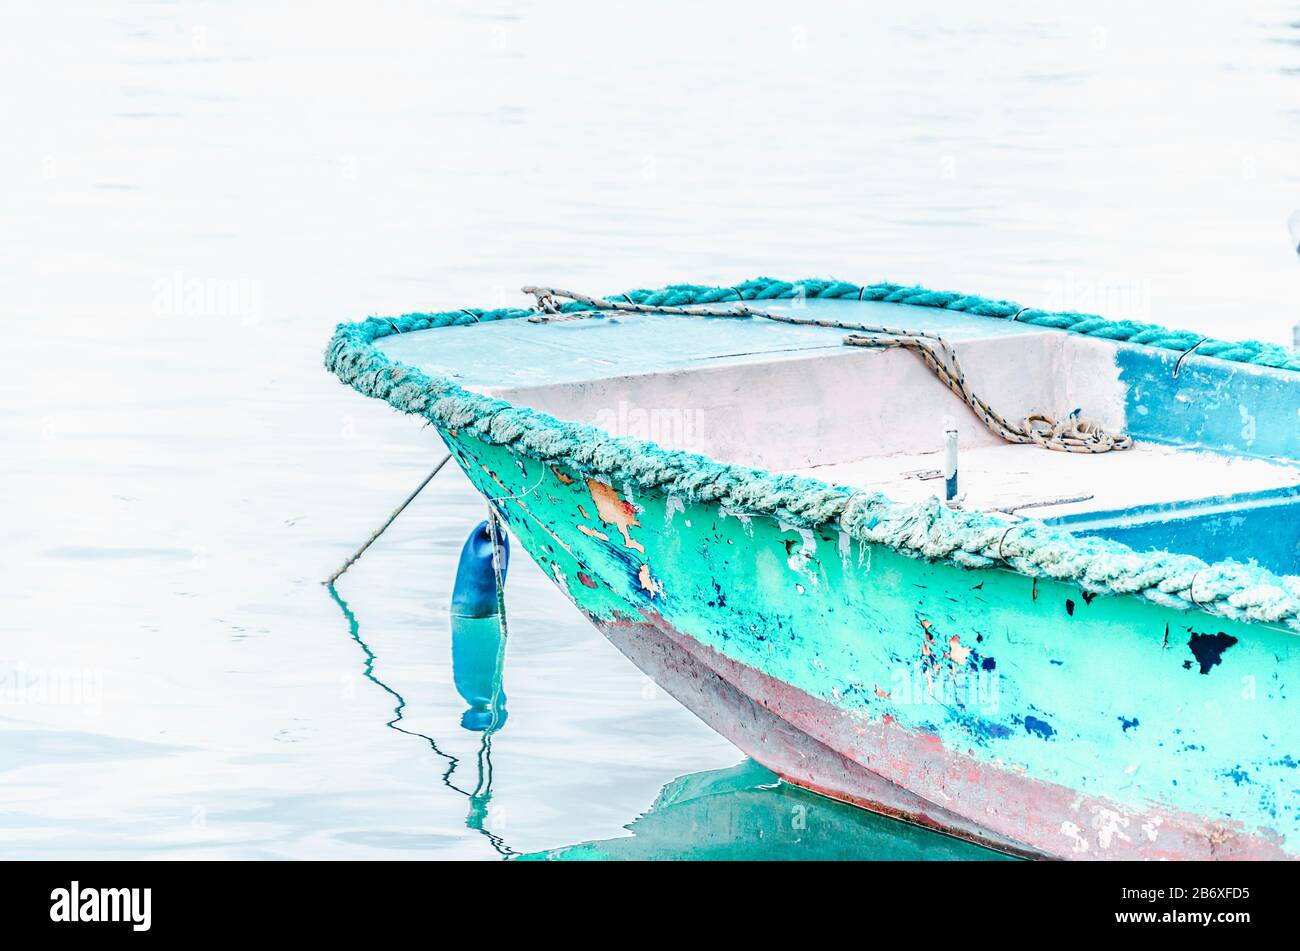 Vecchia barca shabby dipinta verde menta con scaglie di pait che cadono Foto Stock